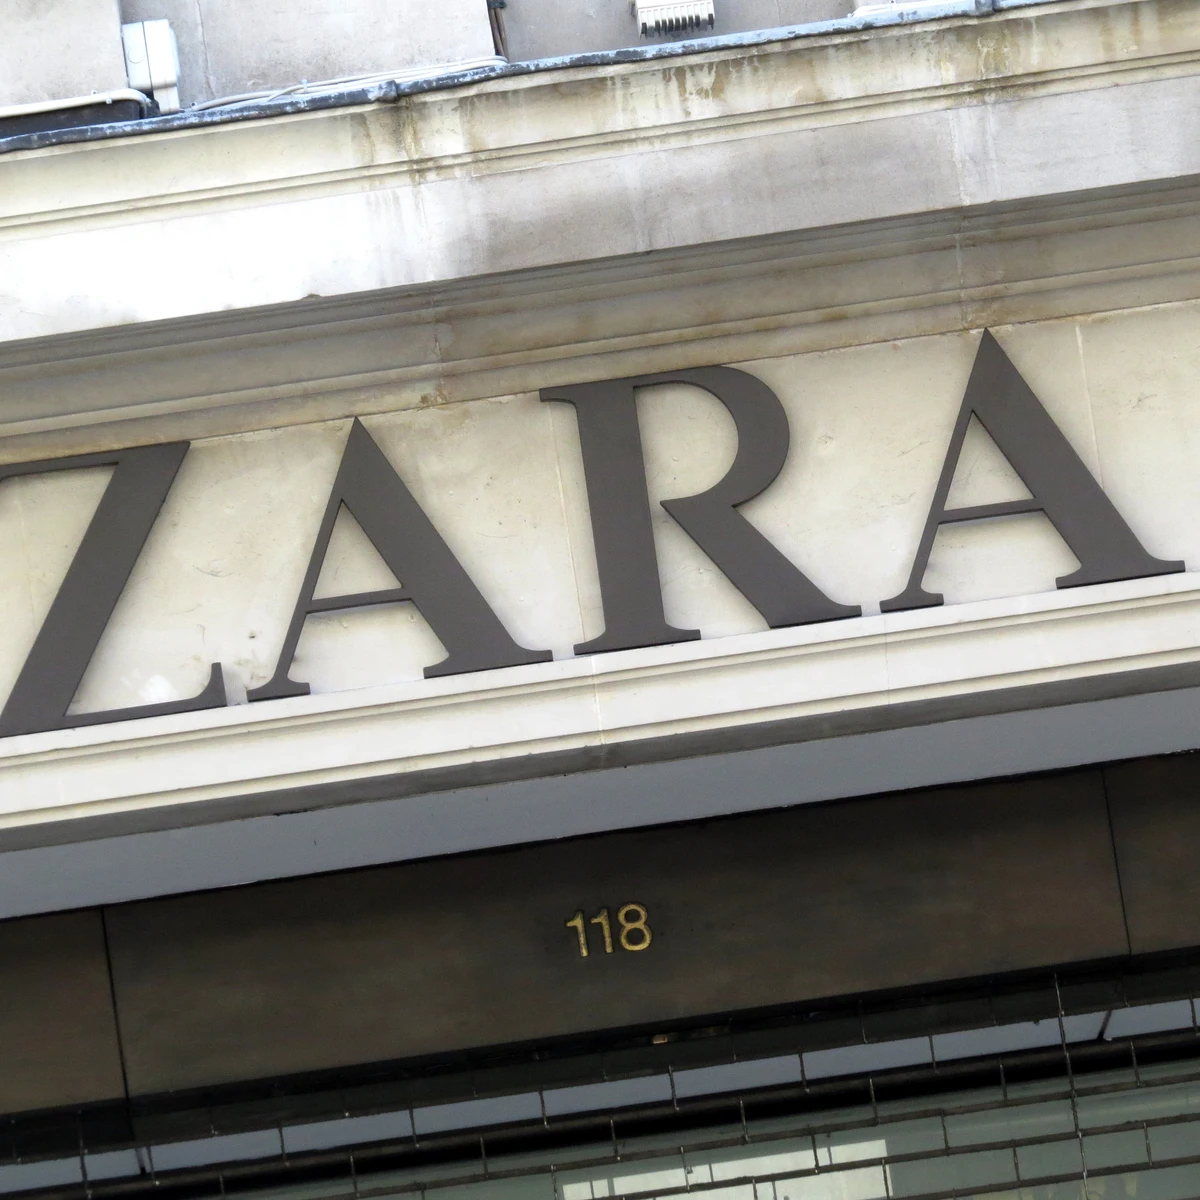 Zara (ropa de segunda mano): ¿Va a ser Zara el nuevo Vinted? Las